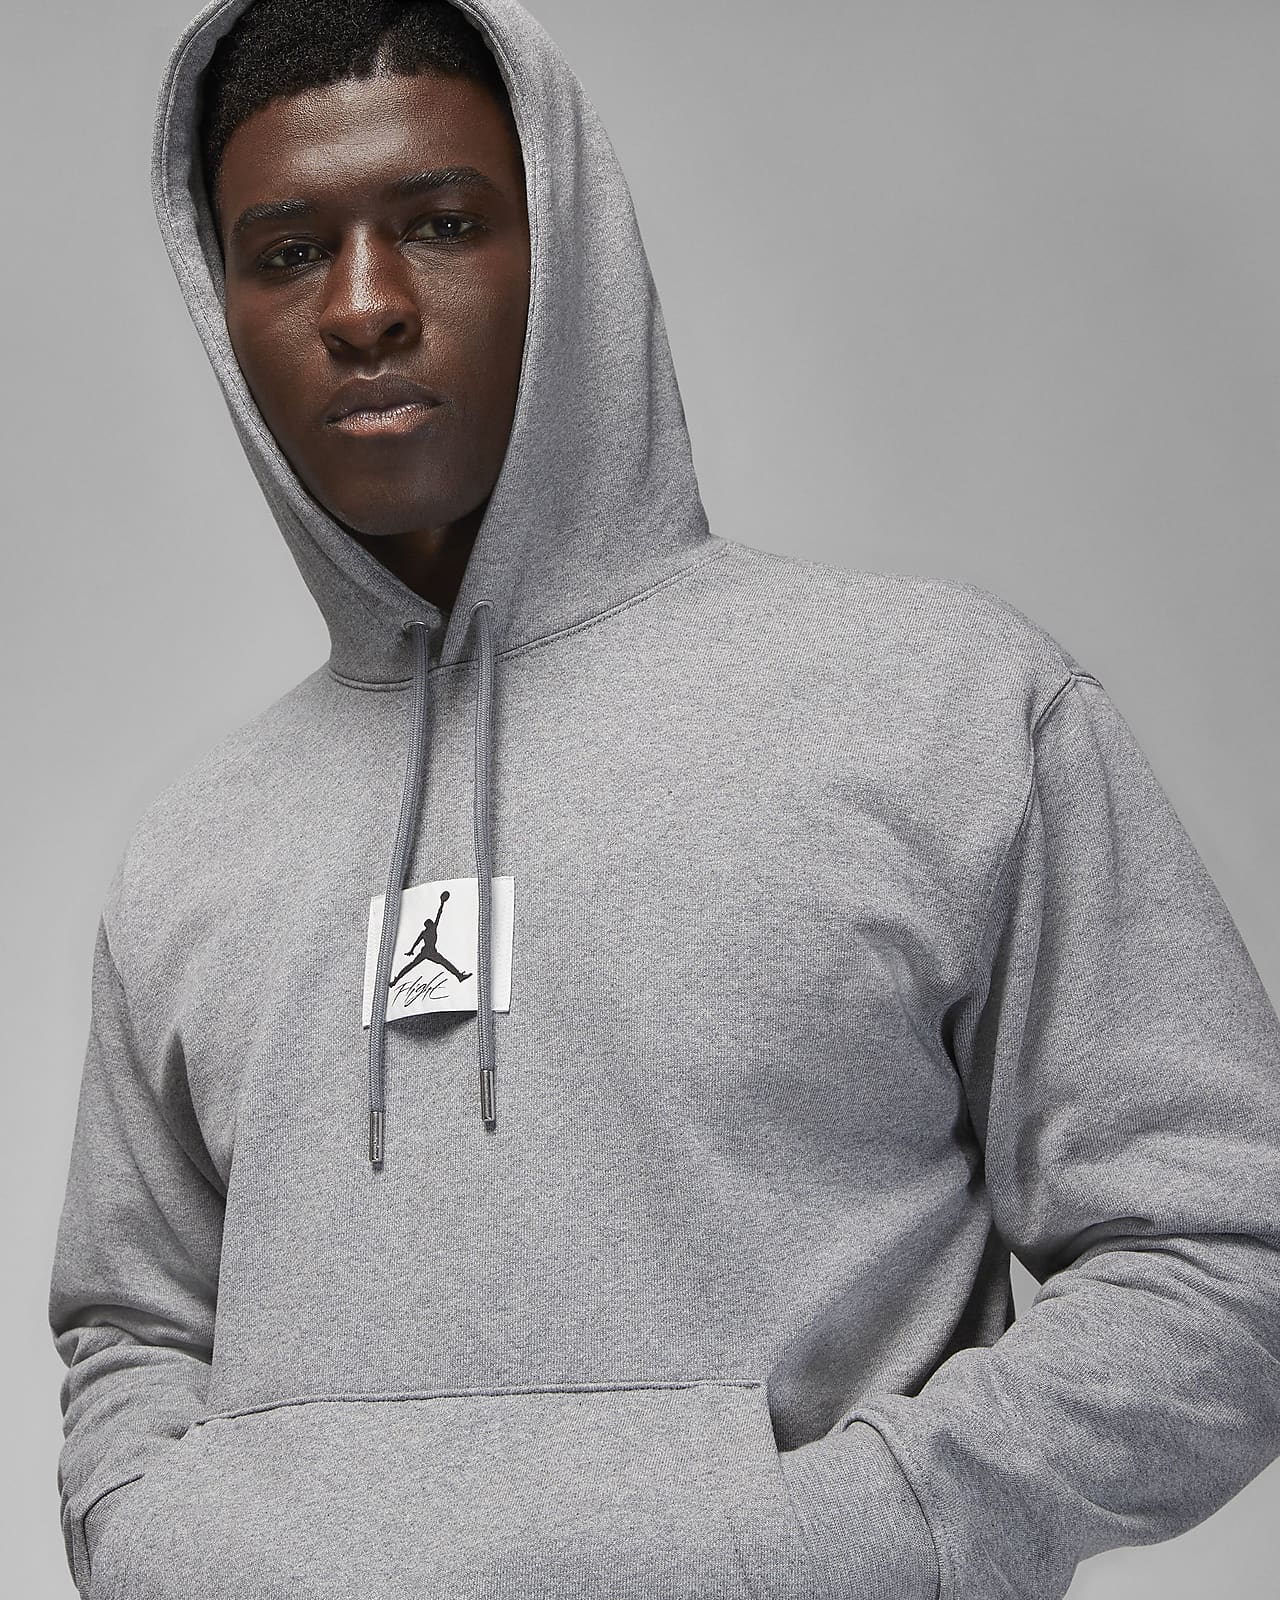 Legitimationsoplysninger Udgangspunktet mål Jordan Flight Fleece Men's Pullover Hoodie. Nike.com